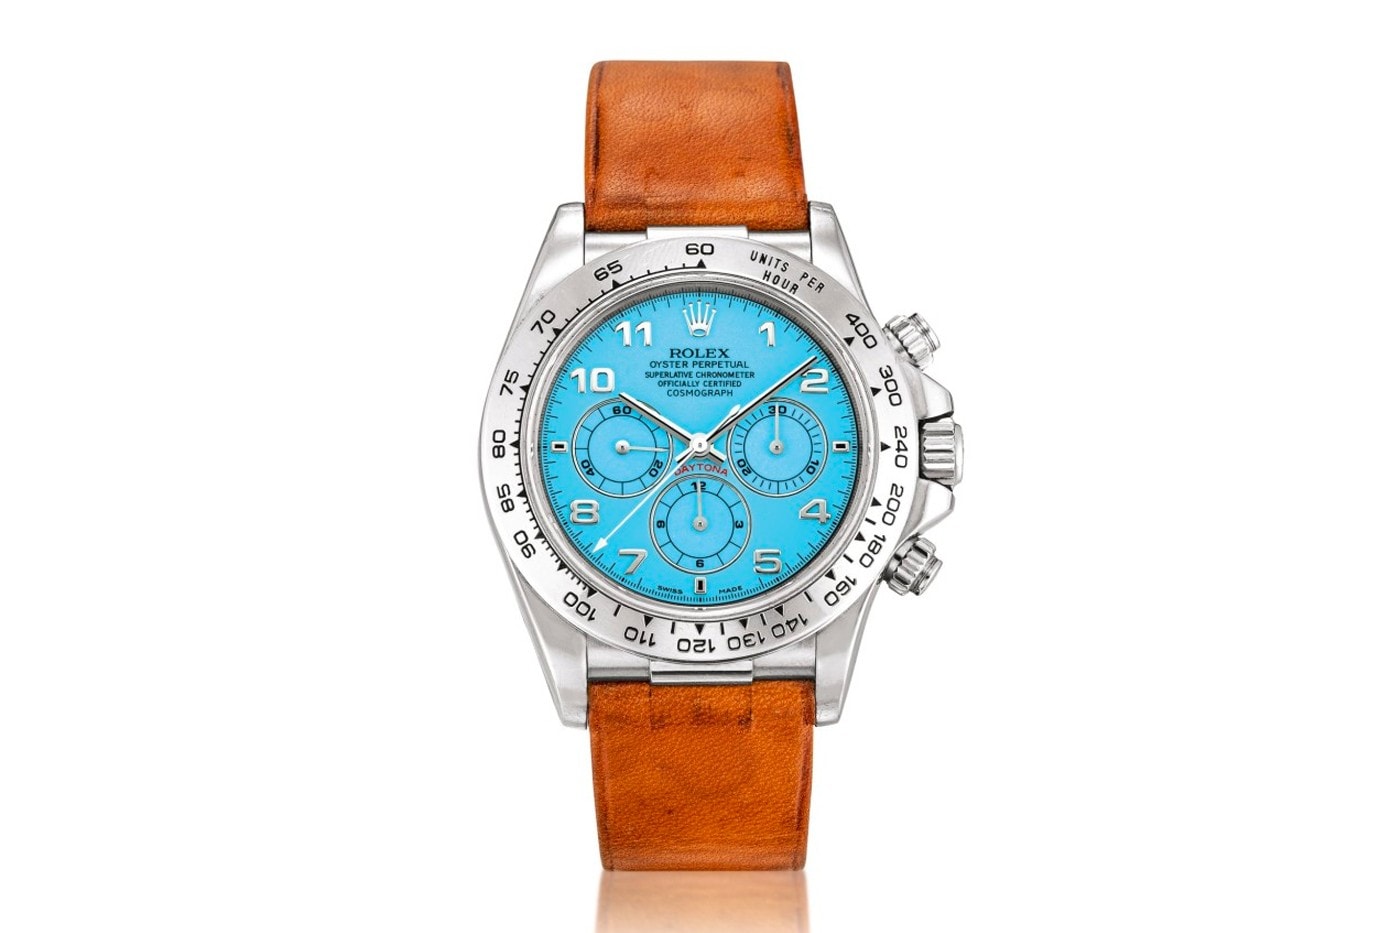 極罕有綠松石錶盤白金材質錶殼 Rolex Daytona 拍賣 $310 萬美元